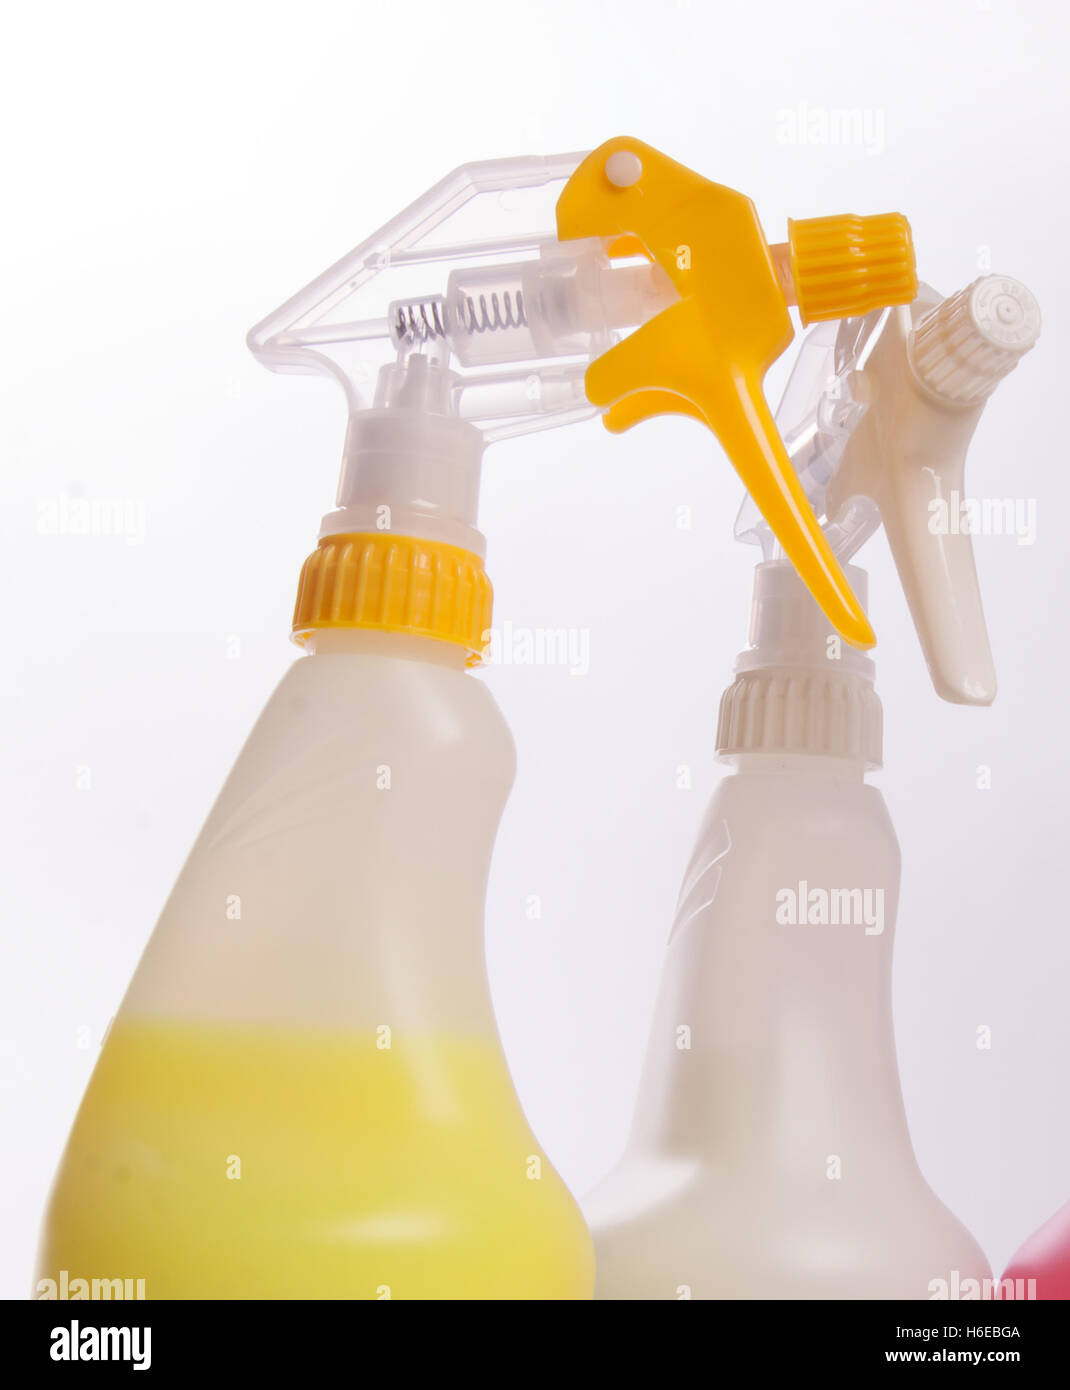 Auslösen von Sprühflaschen, Hand-held-Sprayer in gelb und weiß Stockfoto